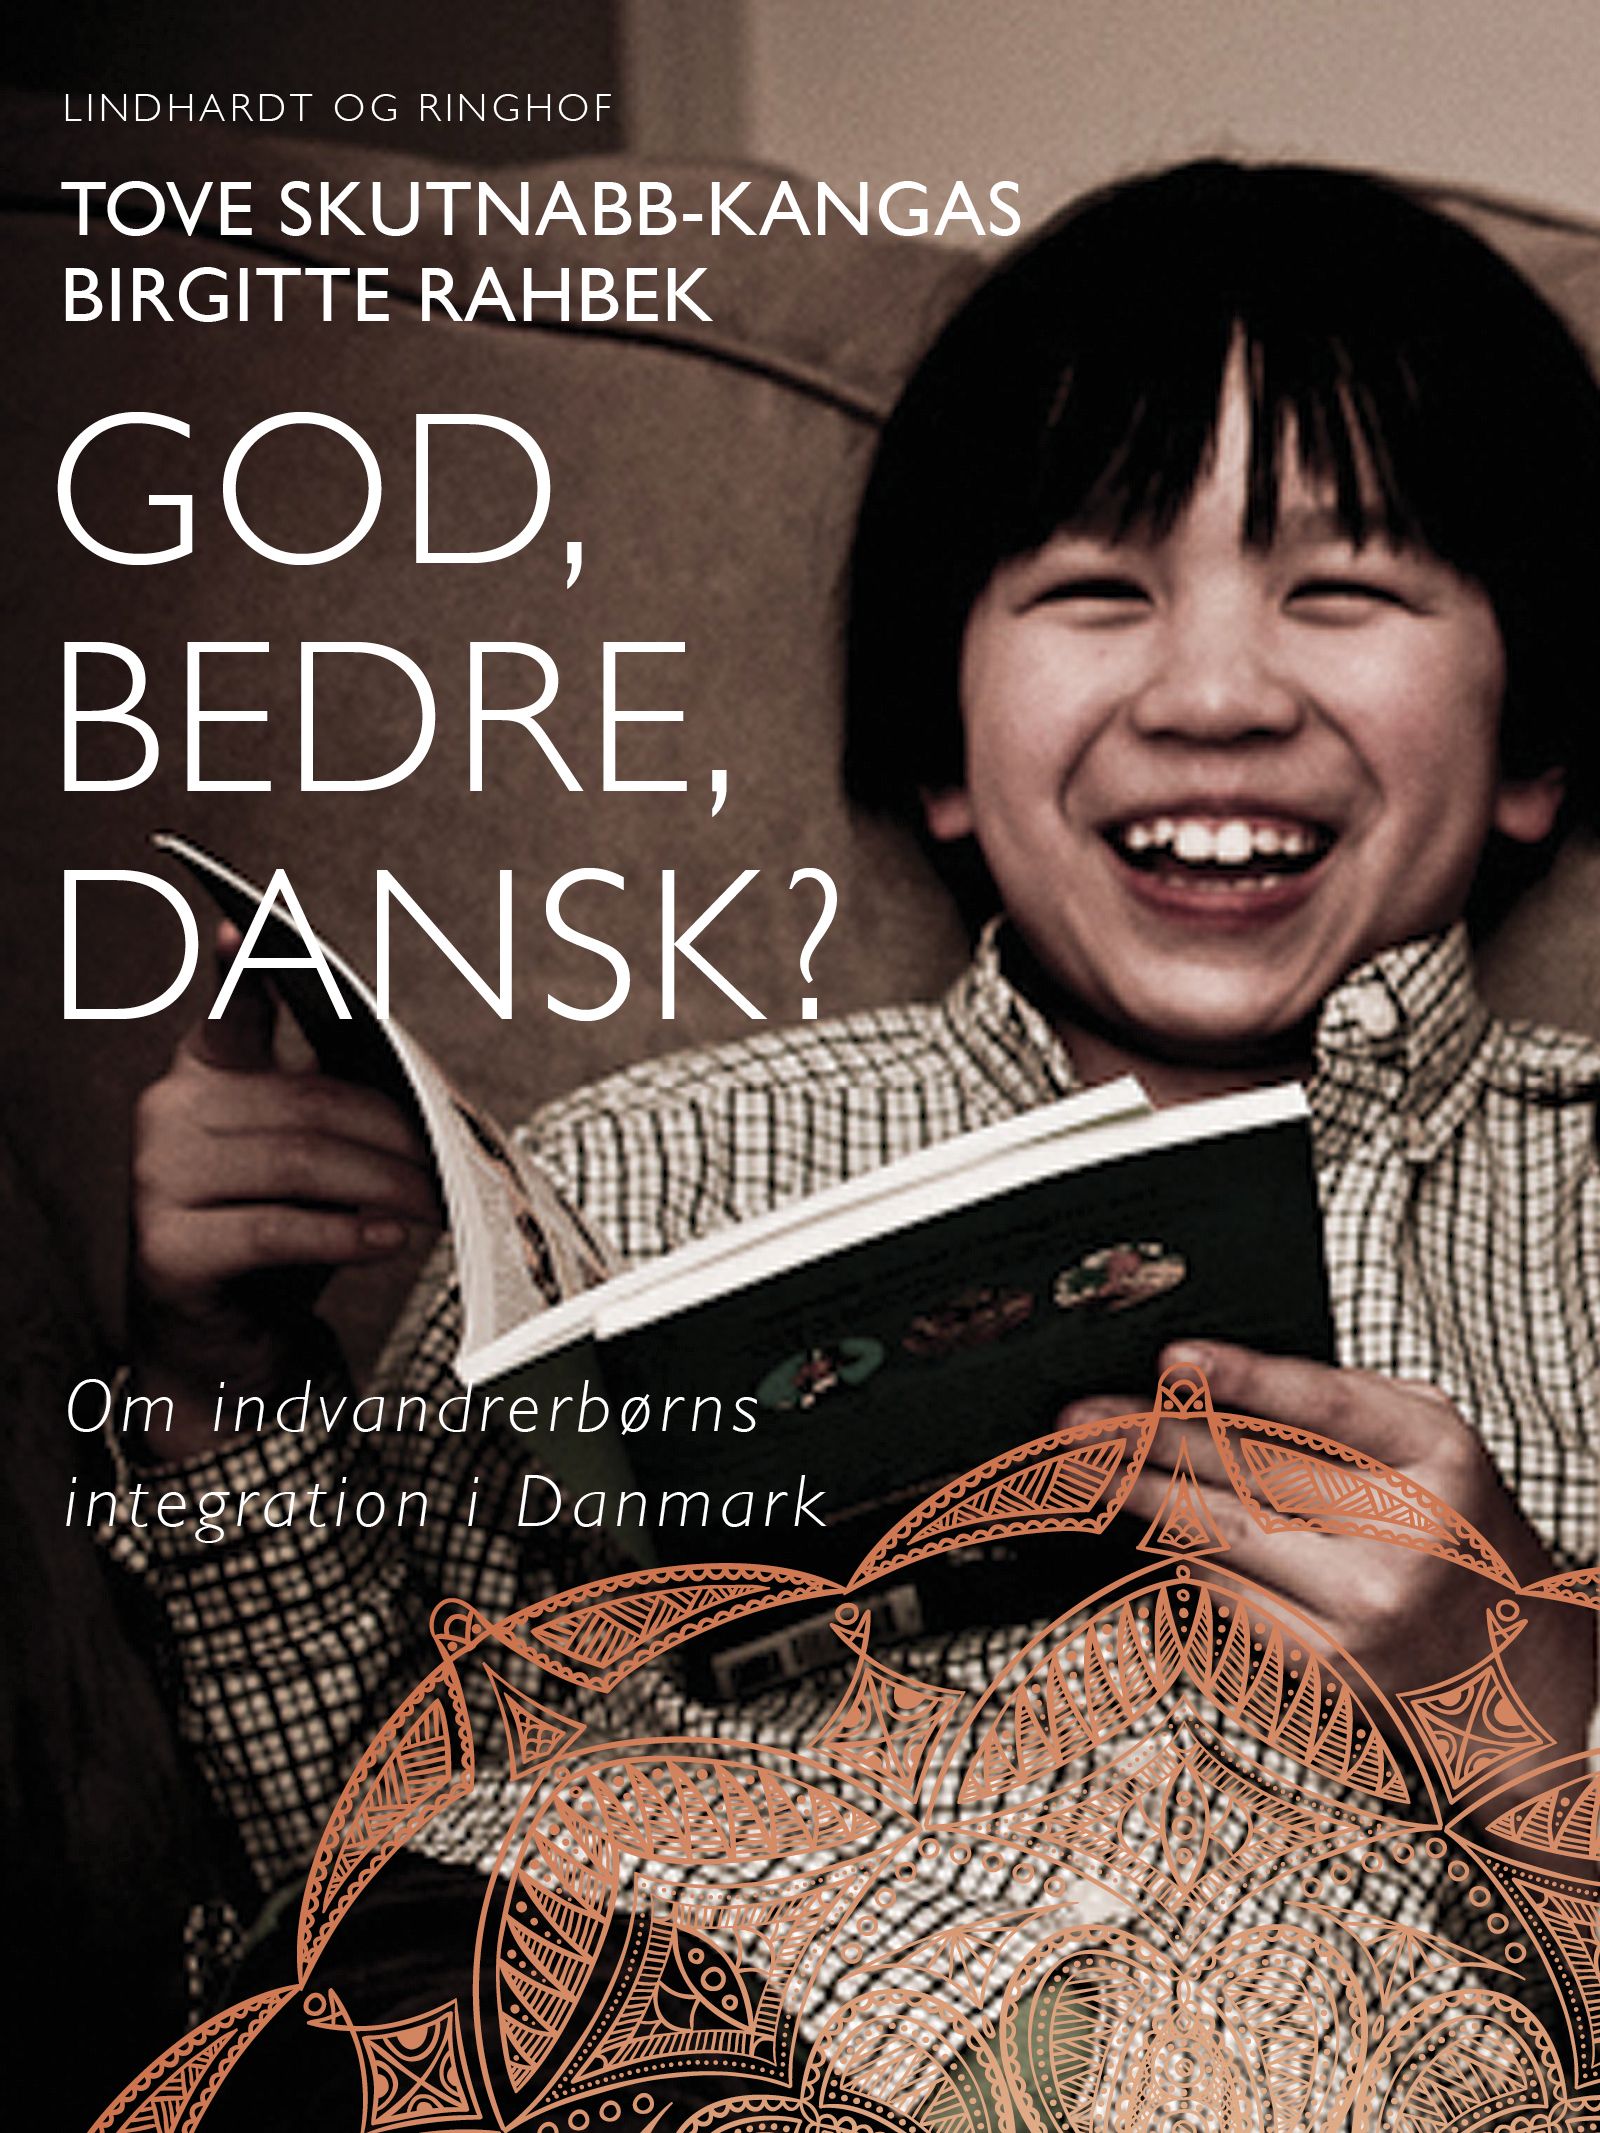 God, bedre, dansk? Om indvandrerbørns integration i Danmark, e-bok av Birgitte Rahbek, Tove Skutnabb-Kangas